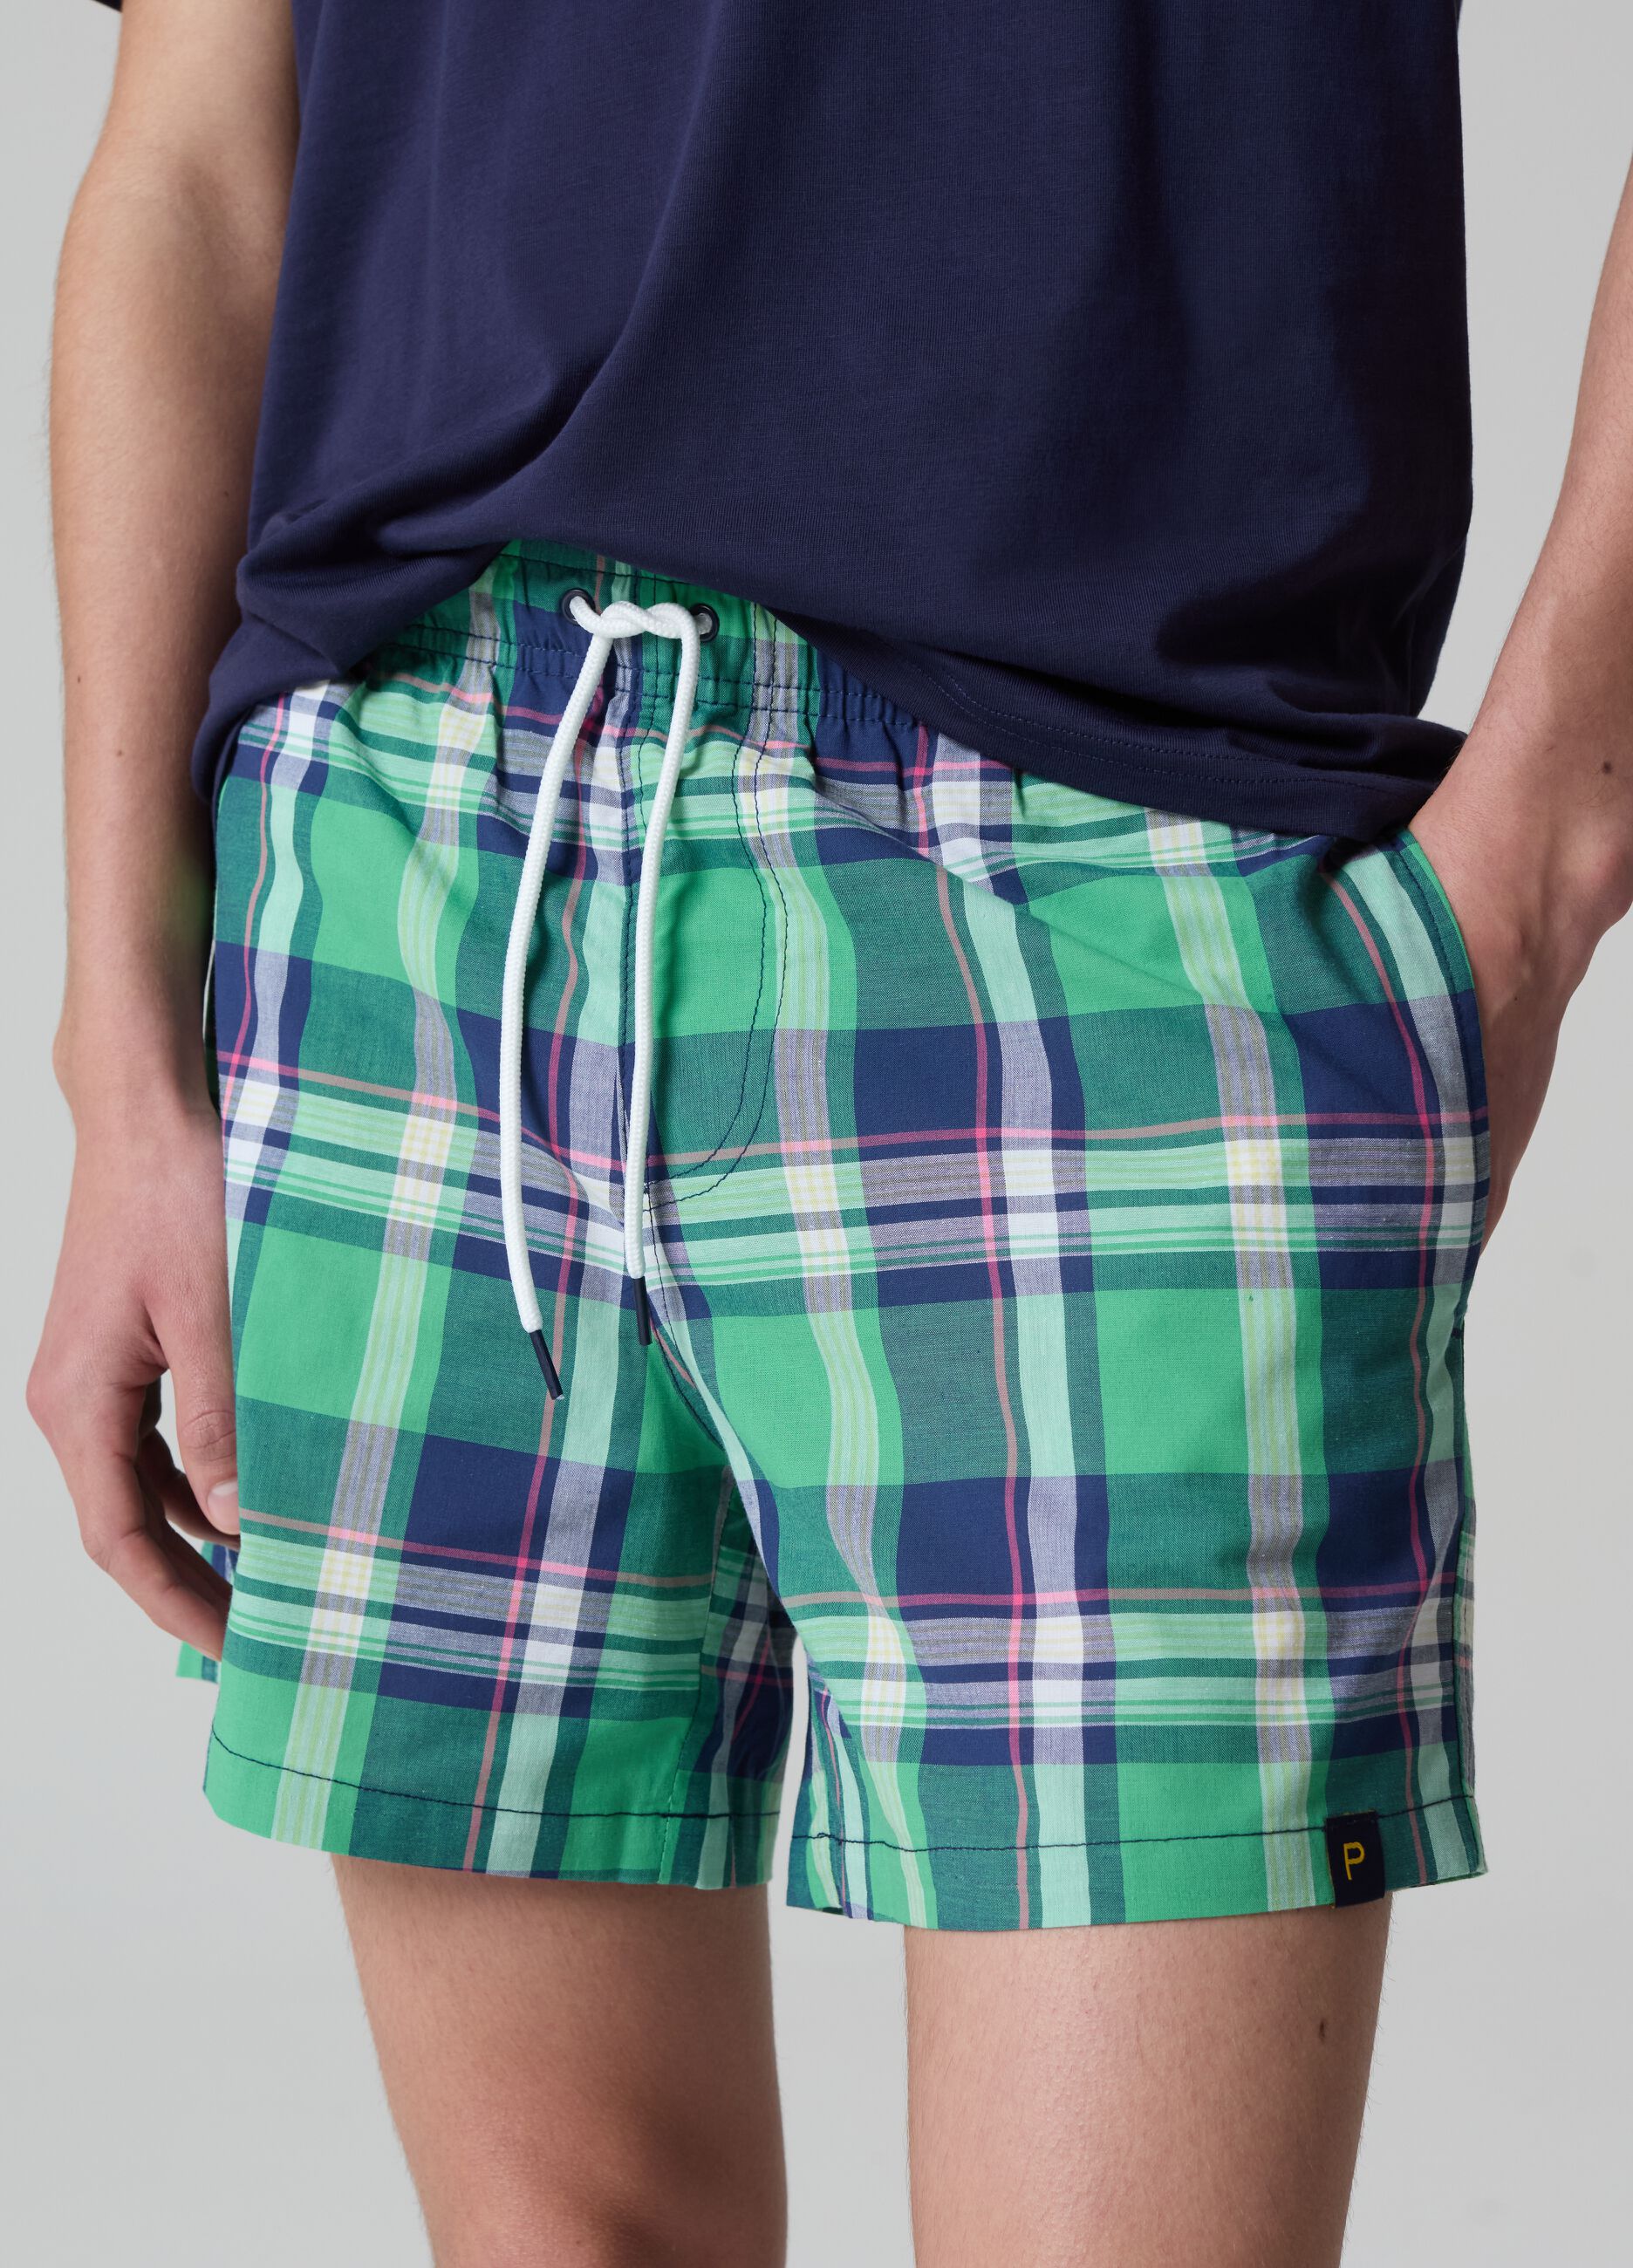 Bermuda swim shorts in check cotton